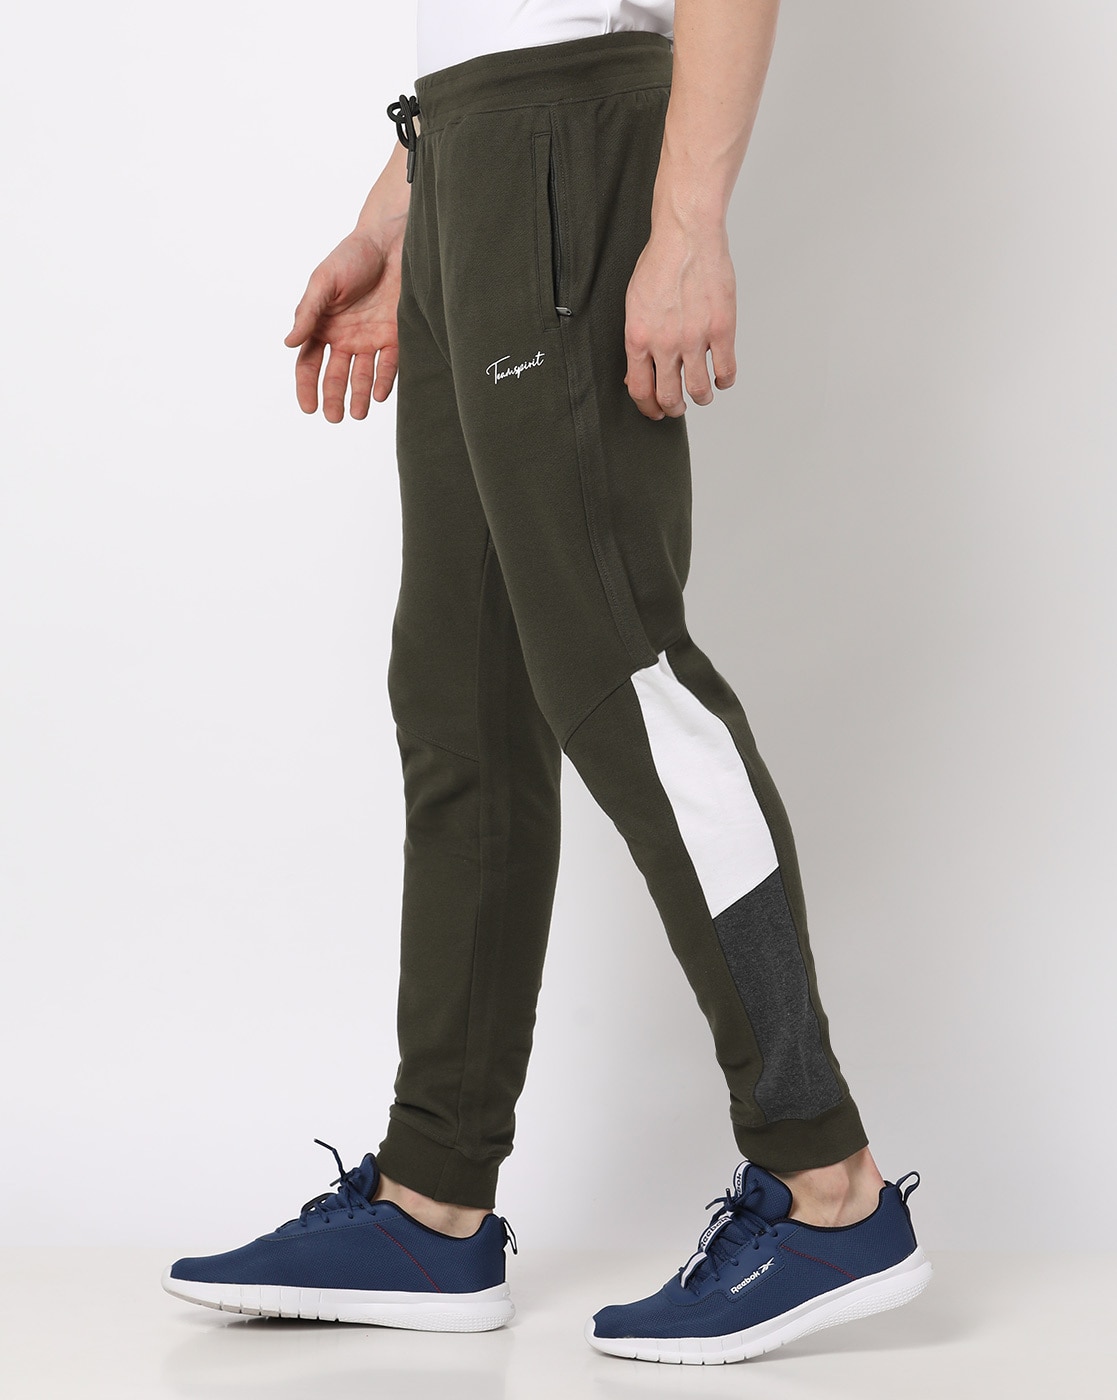 Iljndtgbe Mens Jogger Sweatpants Pockets Running Pants Mens Colorful Reflective Pants Casual Hop Hop Leg Pants Colorful Reflective Pants, Men's, Size